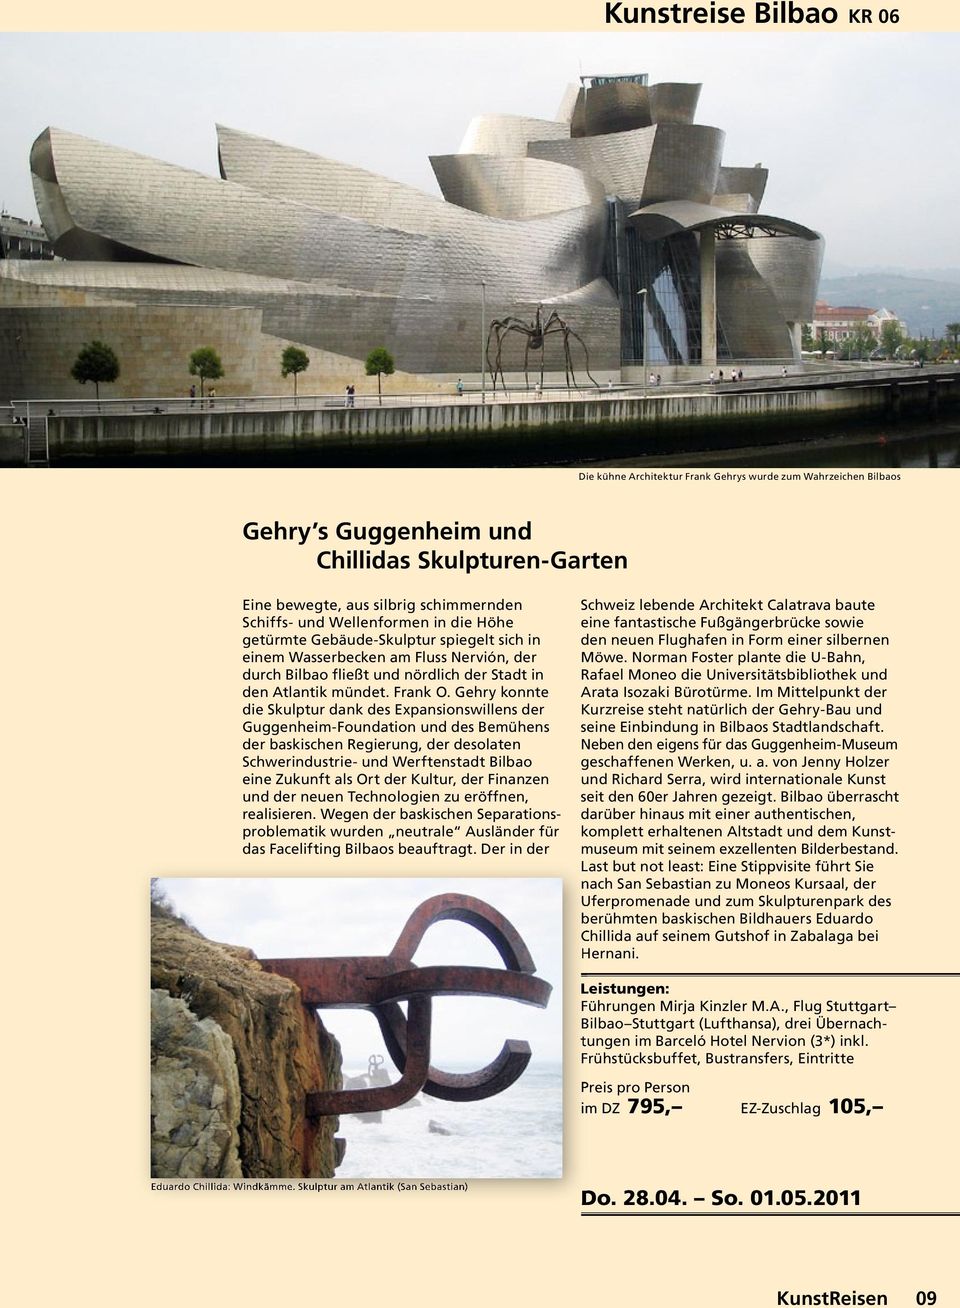 Gehry konnte die Skulptur dank des Expansionswillens der Guggenheim-Foundation und des Bemühens der baskischen Regierung, der desolaten Schwerindustrie- und Werftenstadt Bilbao eine Zukunft als Ort